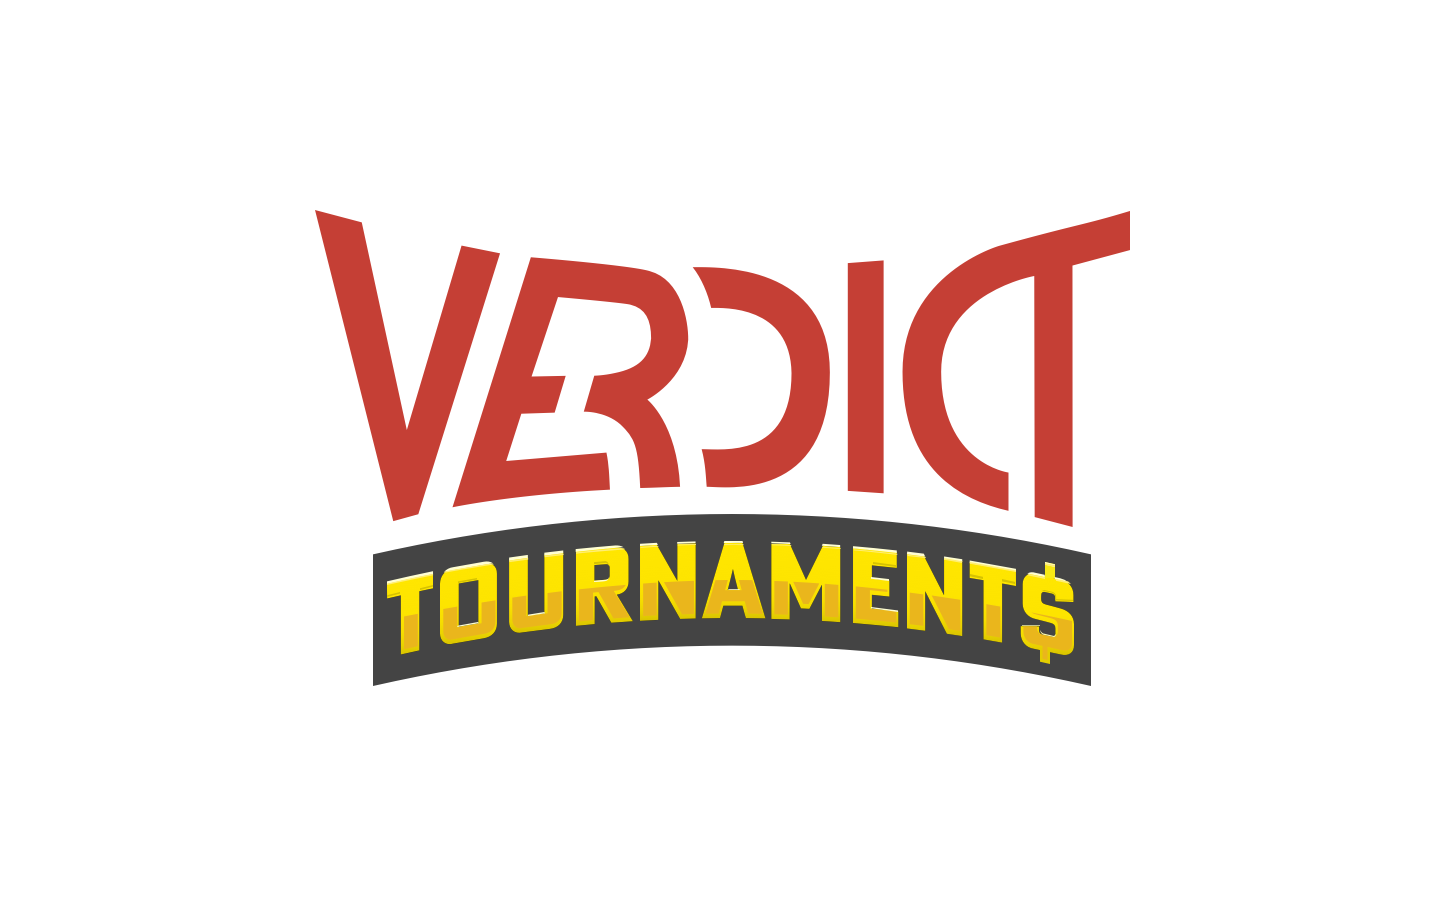 Verdict Tournaments launches in Alabama